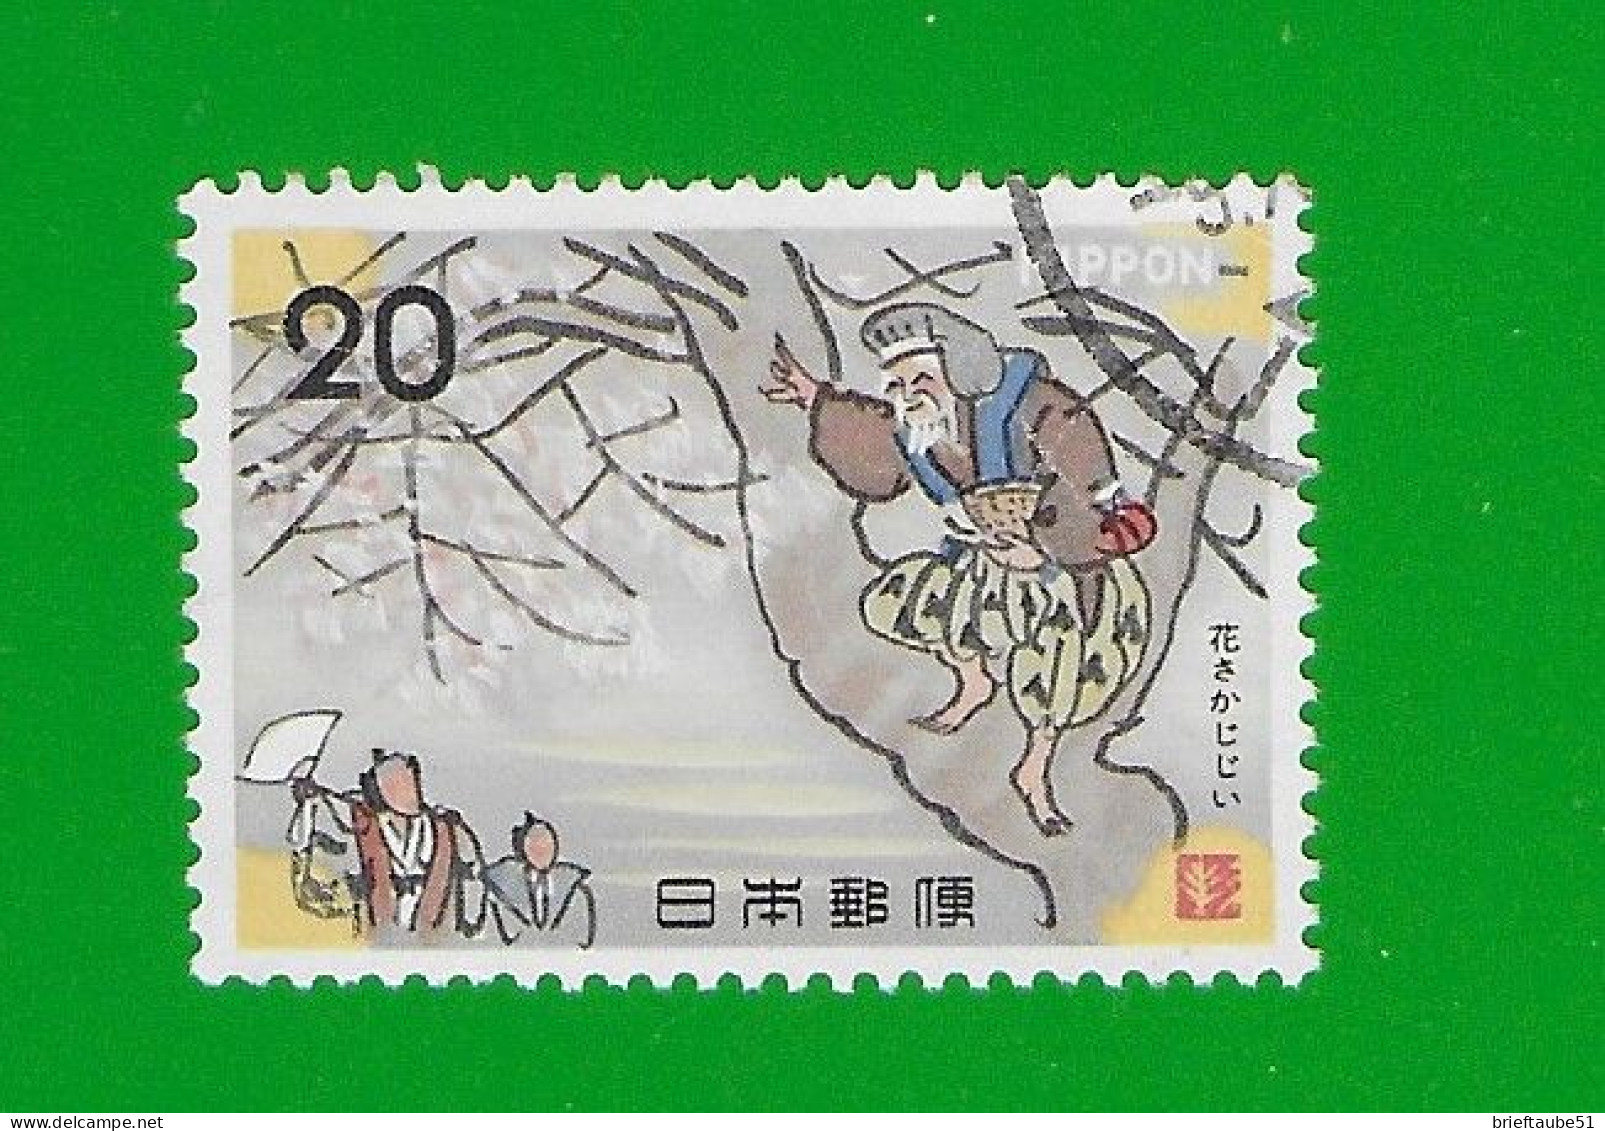 JAPAN 1973  Gestempelt°used/Bedarf # Michel-Nr. 1195  #  VOLKSMÄRCHEN #  "Alter Mann Auf Einem Baum" - Usados